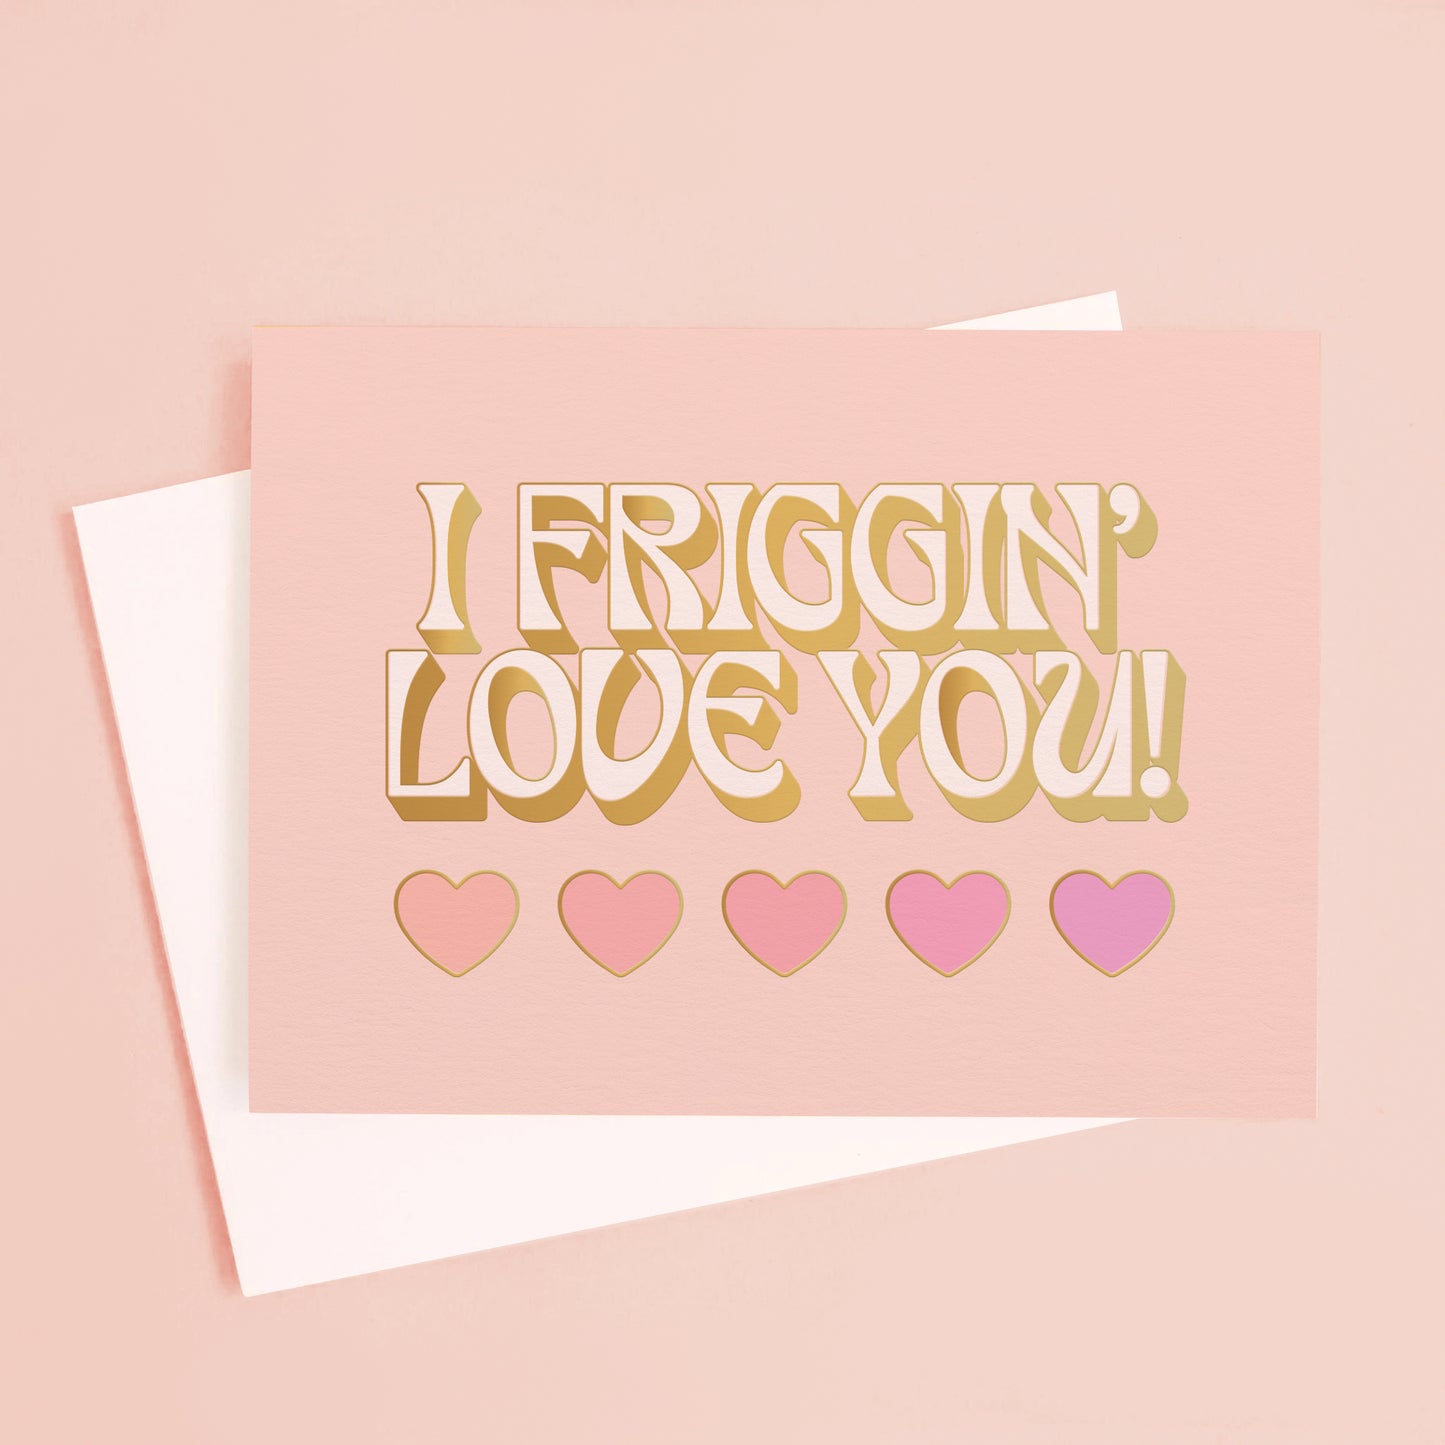 I Friggin' Love You! Card